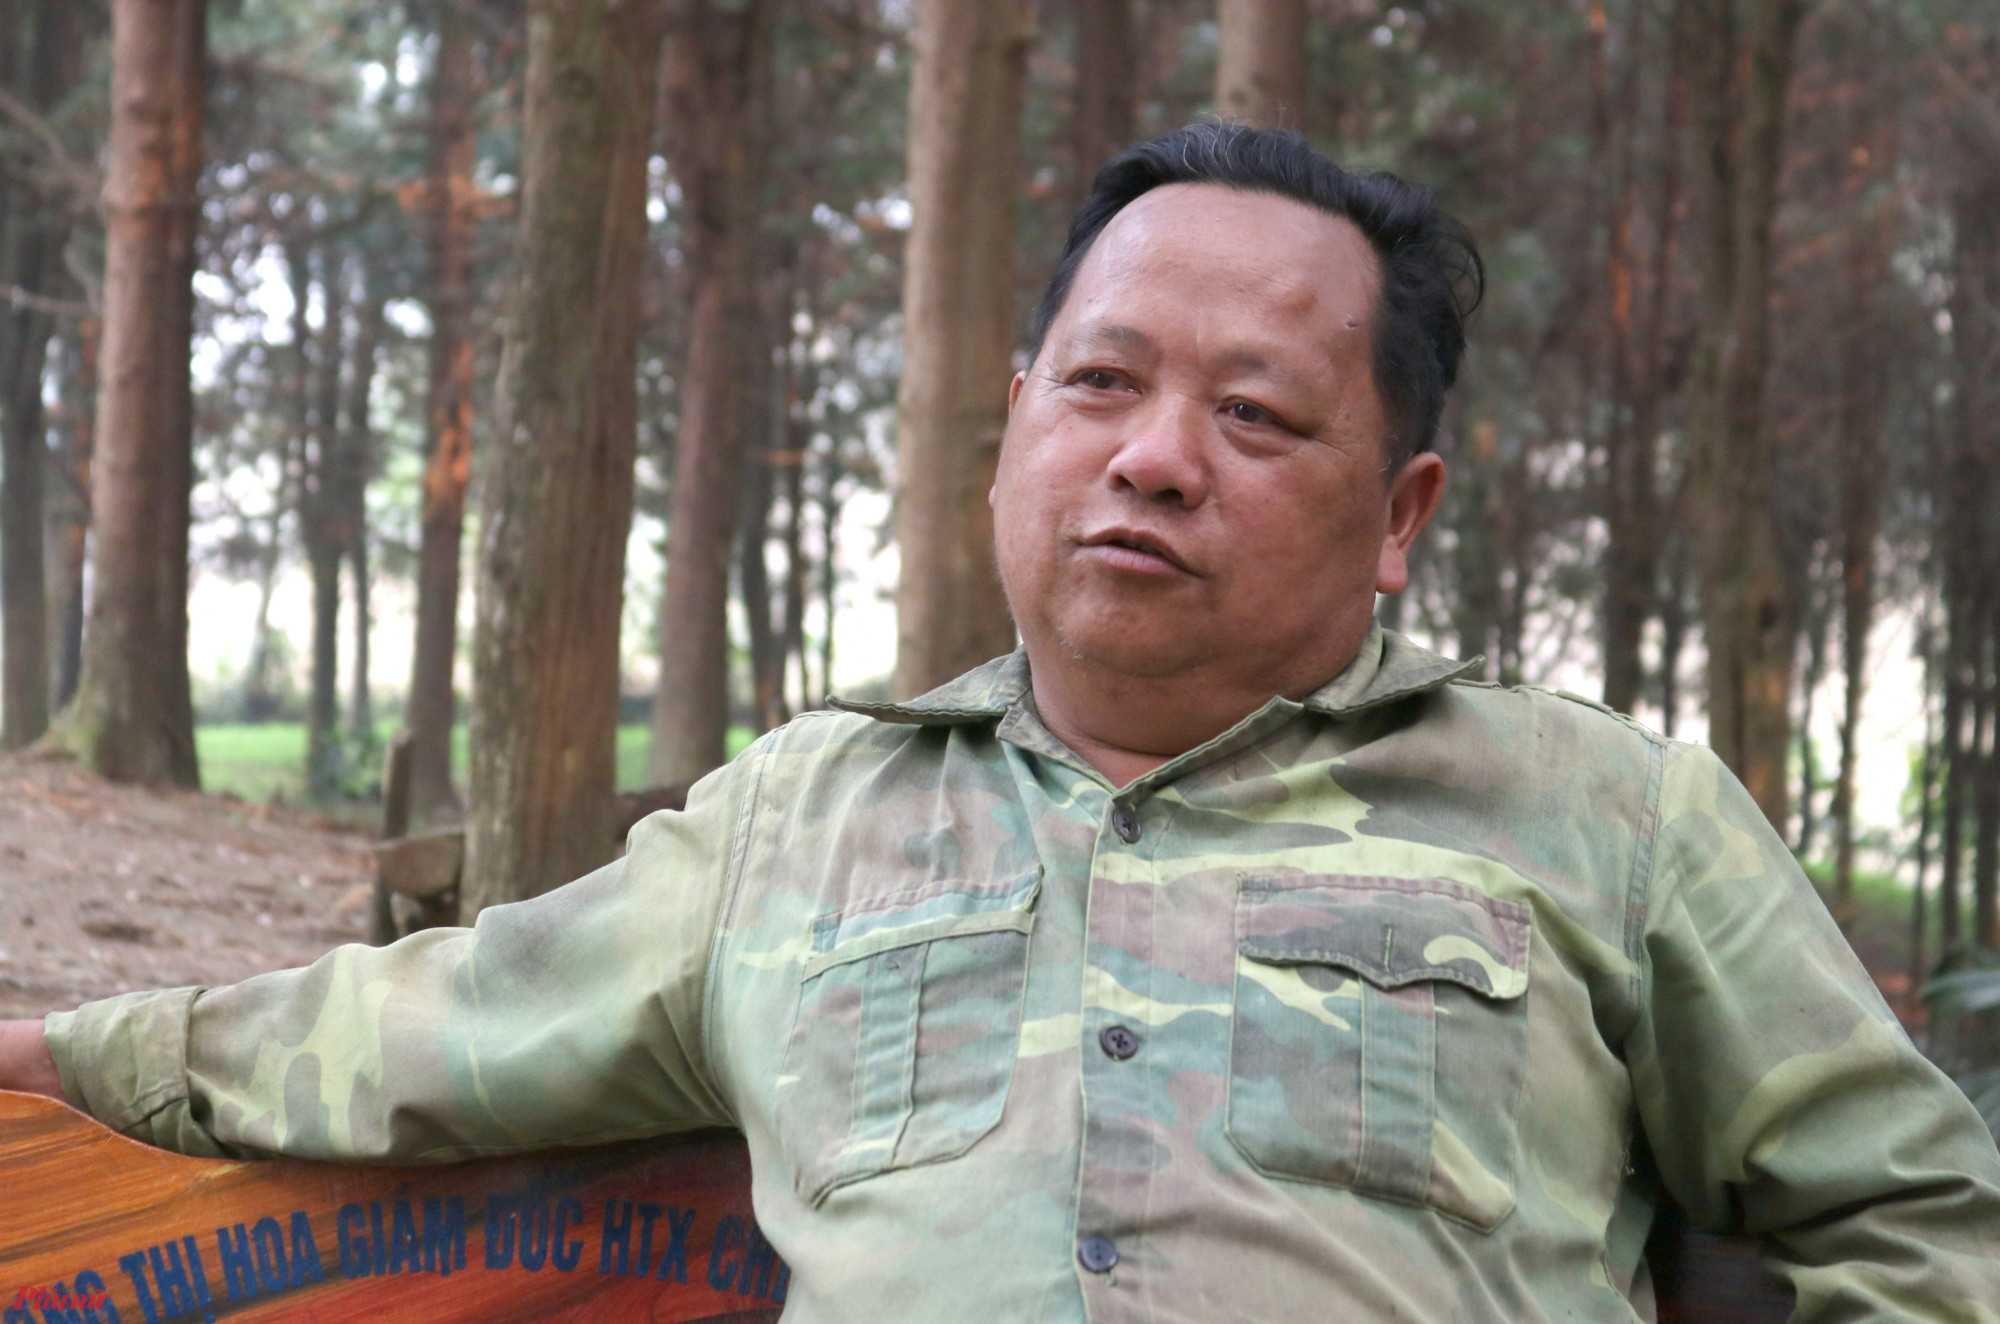 Ông Vừ Vả Chống (56 tuổi, trú xã Huồi Tụ) là người đầu tiên trong xã tiên phong trồng rừng pơ mu. Sau 2 thập kỷ hồi sinh cây pơ mu, nay ông Chống đã sở hữu hơn 10ha rừng pơ mu xanh tốt.'